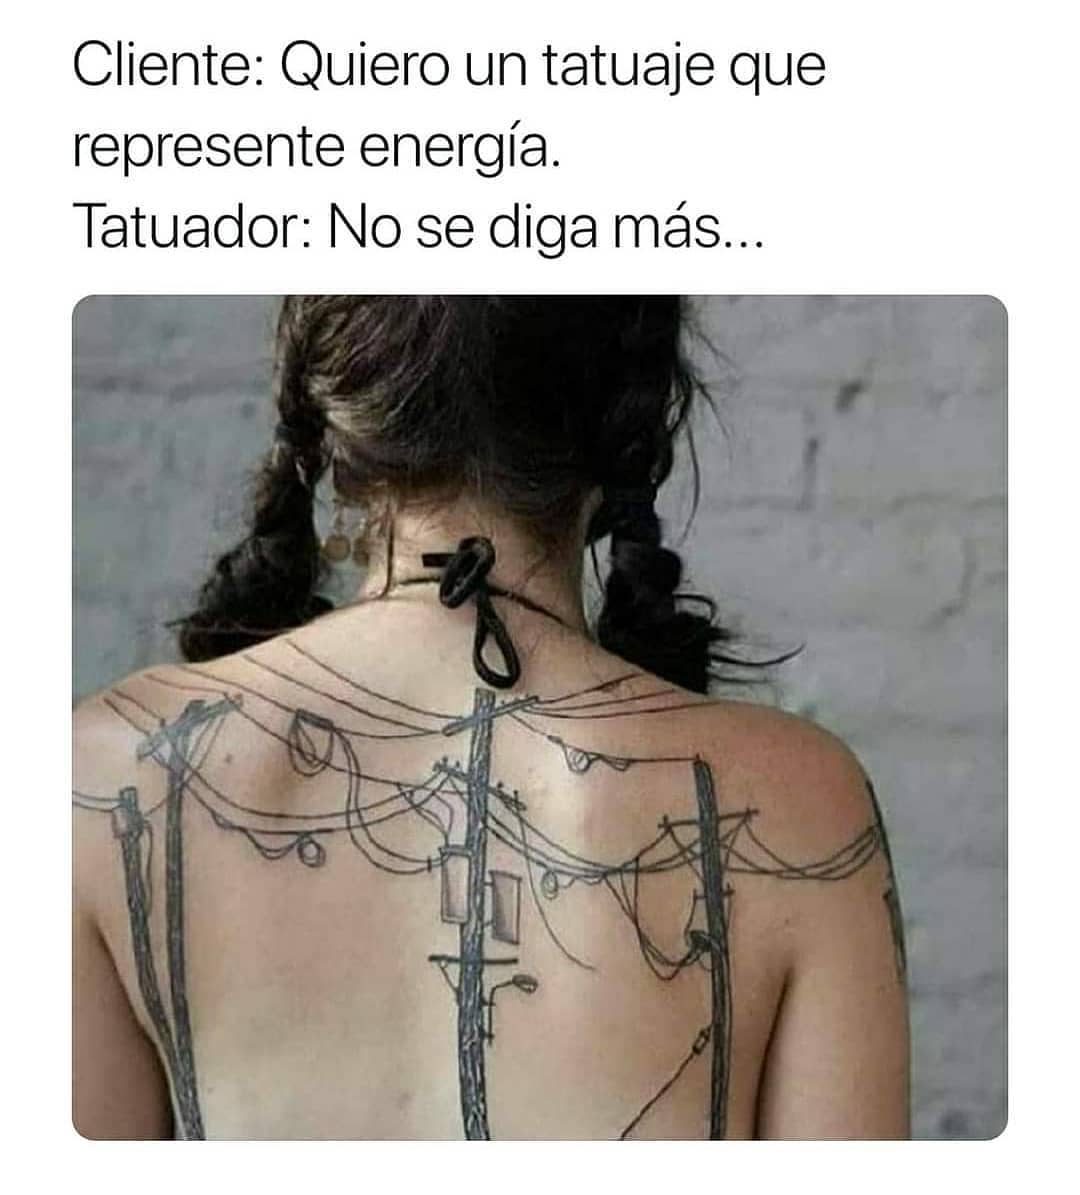 Cliente: Quiero un tatuaje que represente energía.  Tatuador: No se diga más...